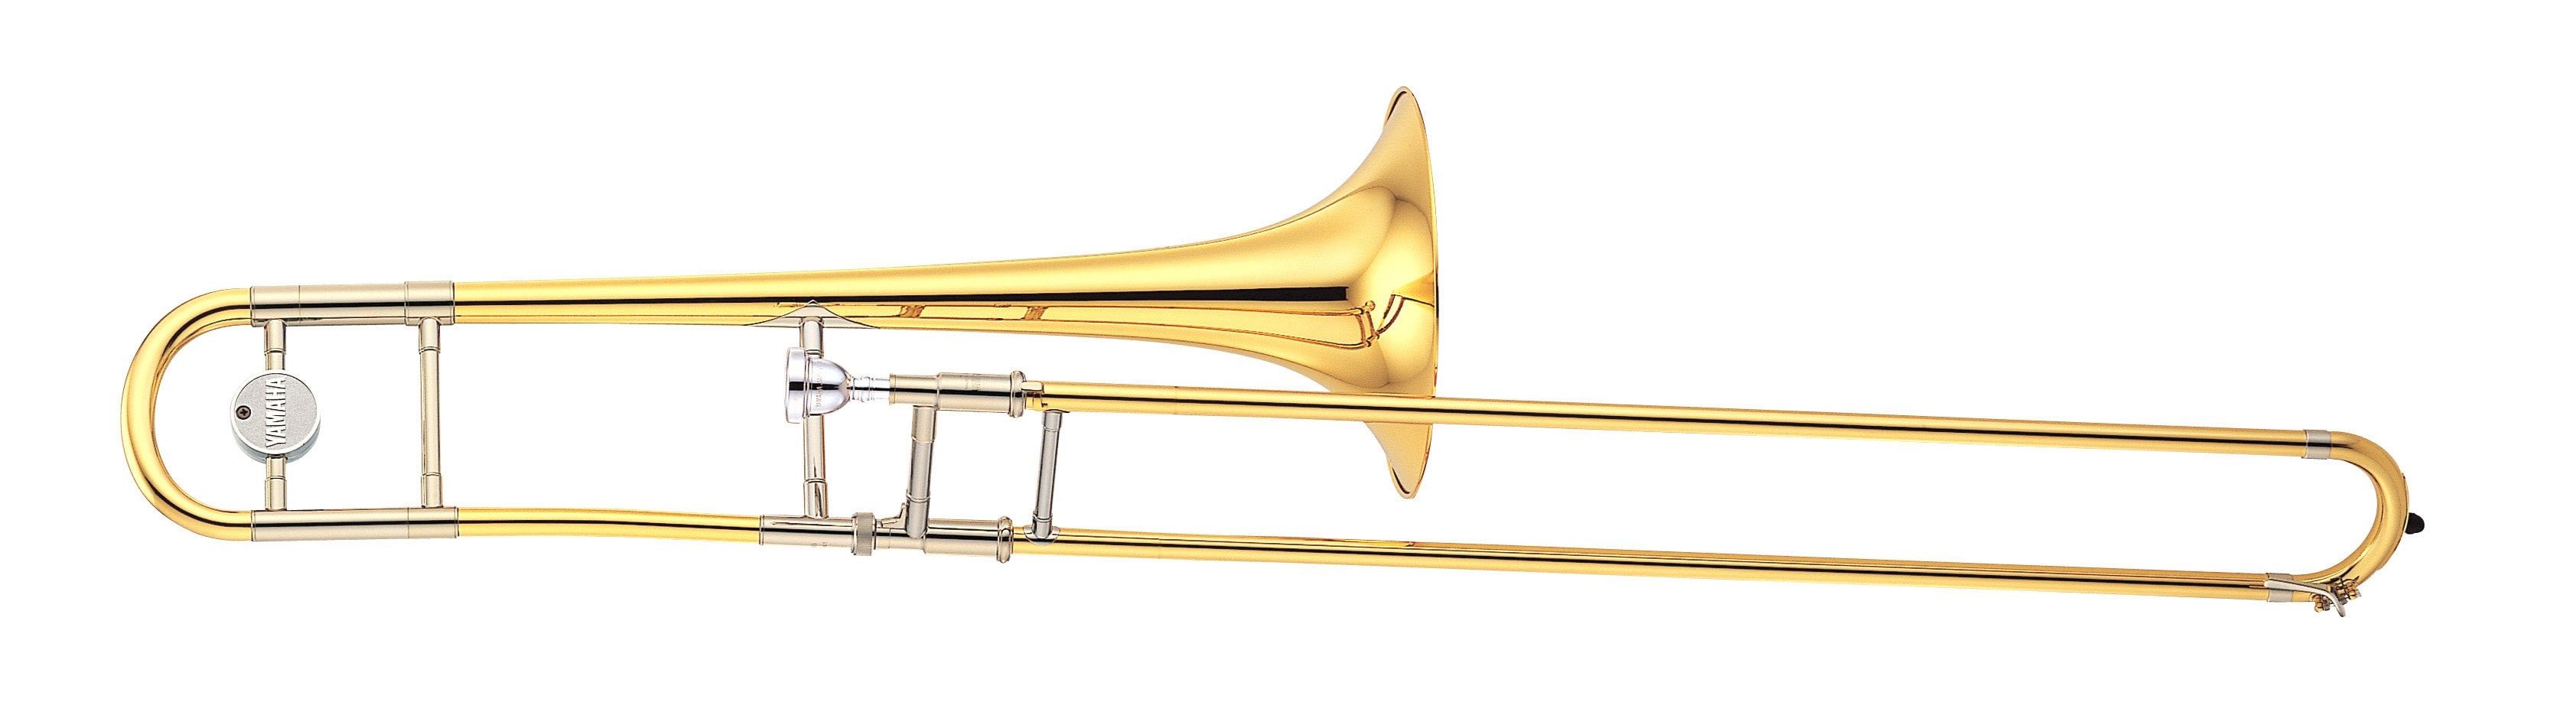 YSL-610/630 - Overview - Trombones - Brass & Woodwinds - Musical